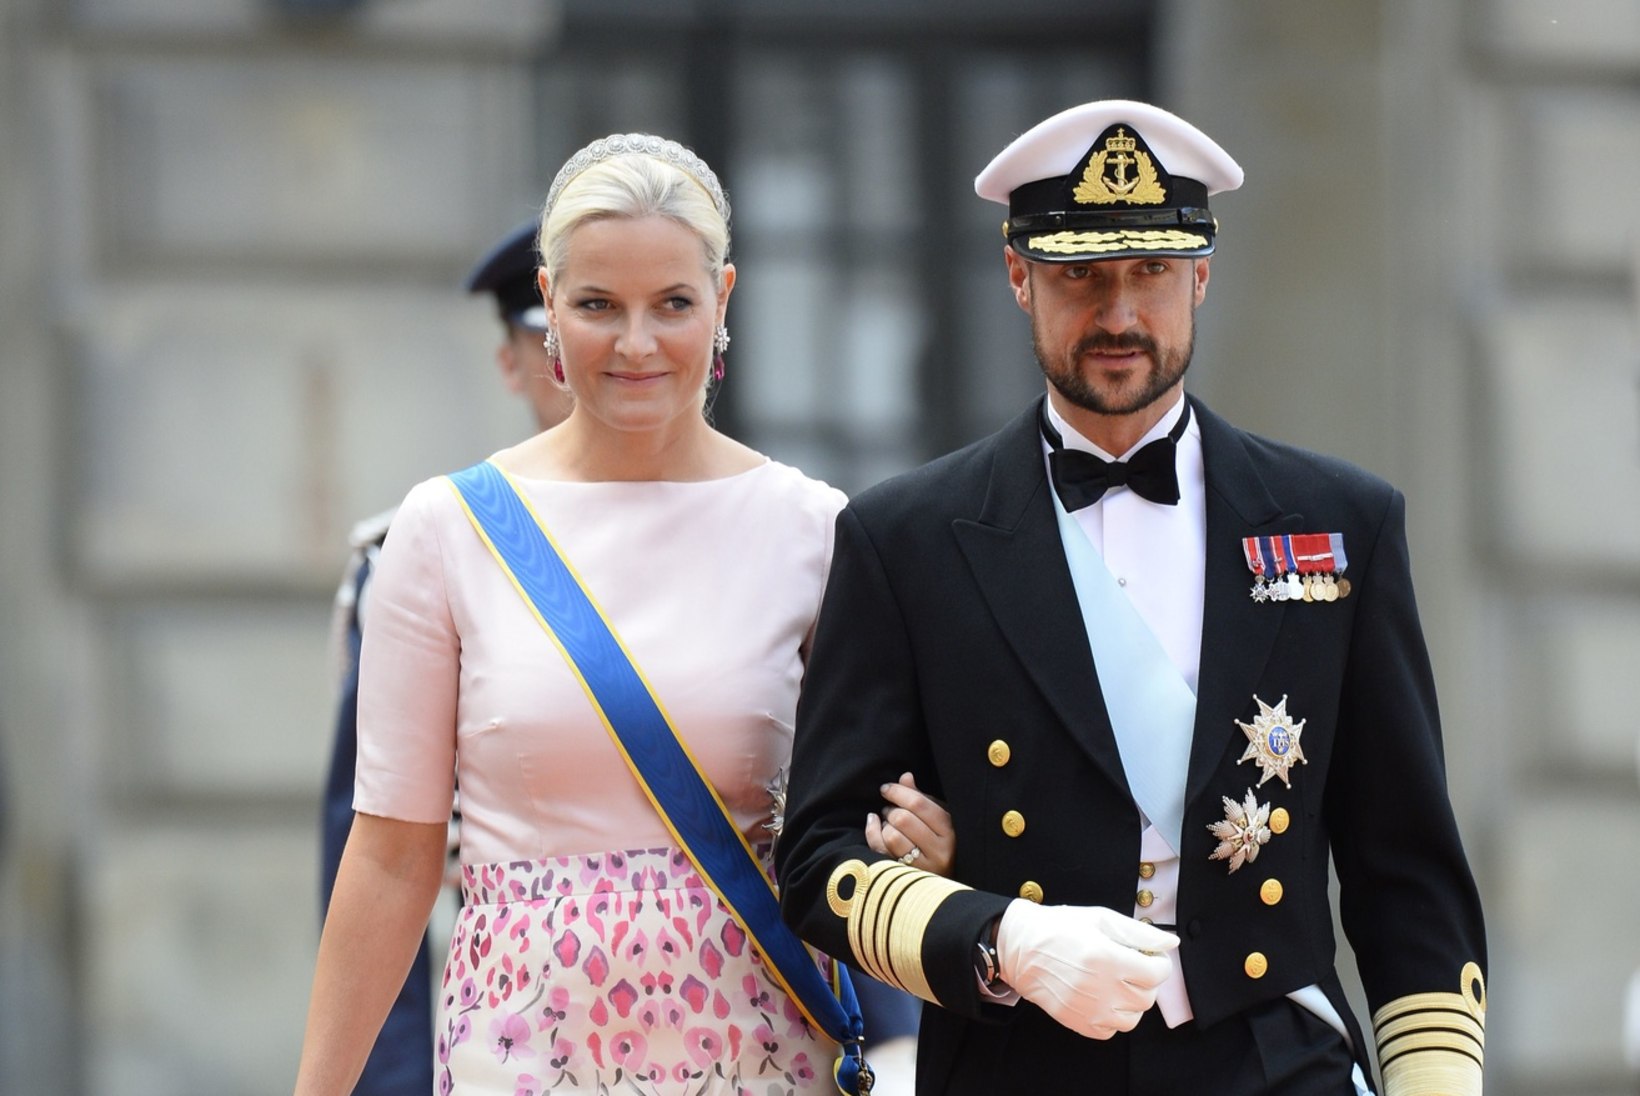 Norra printsessi vaevab isevärki haigus